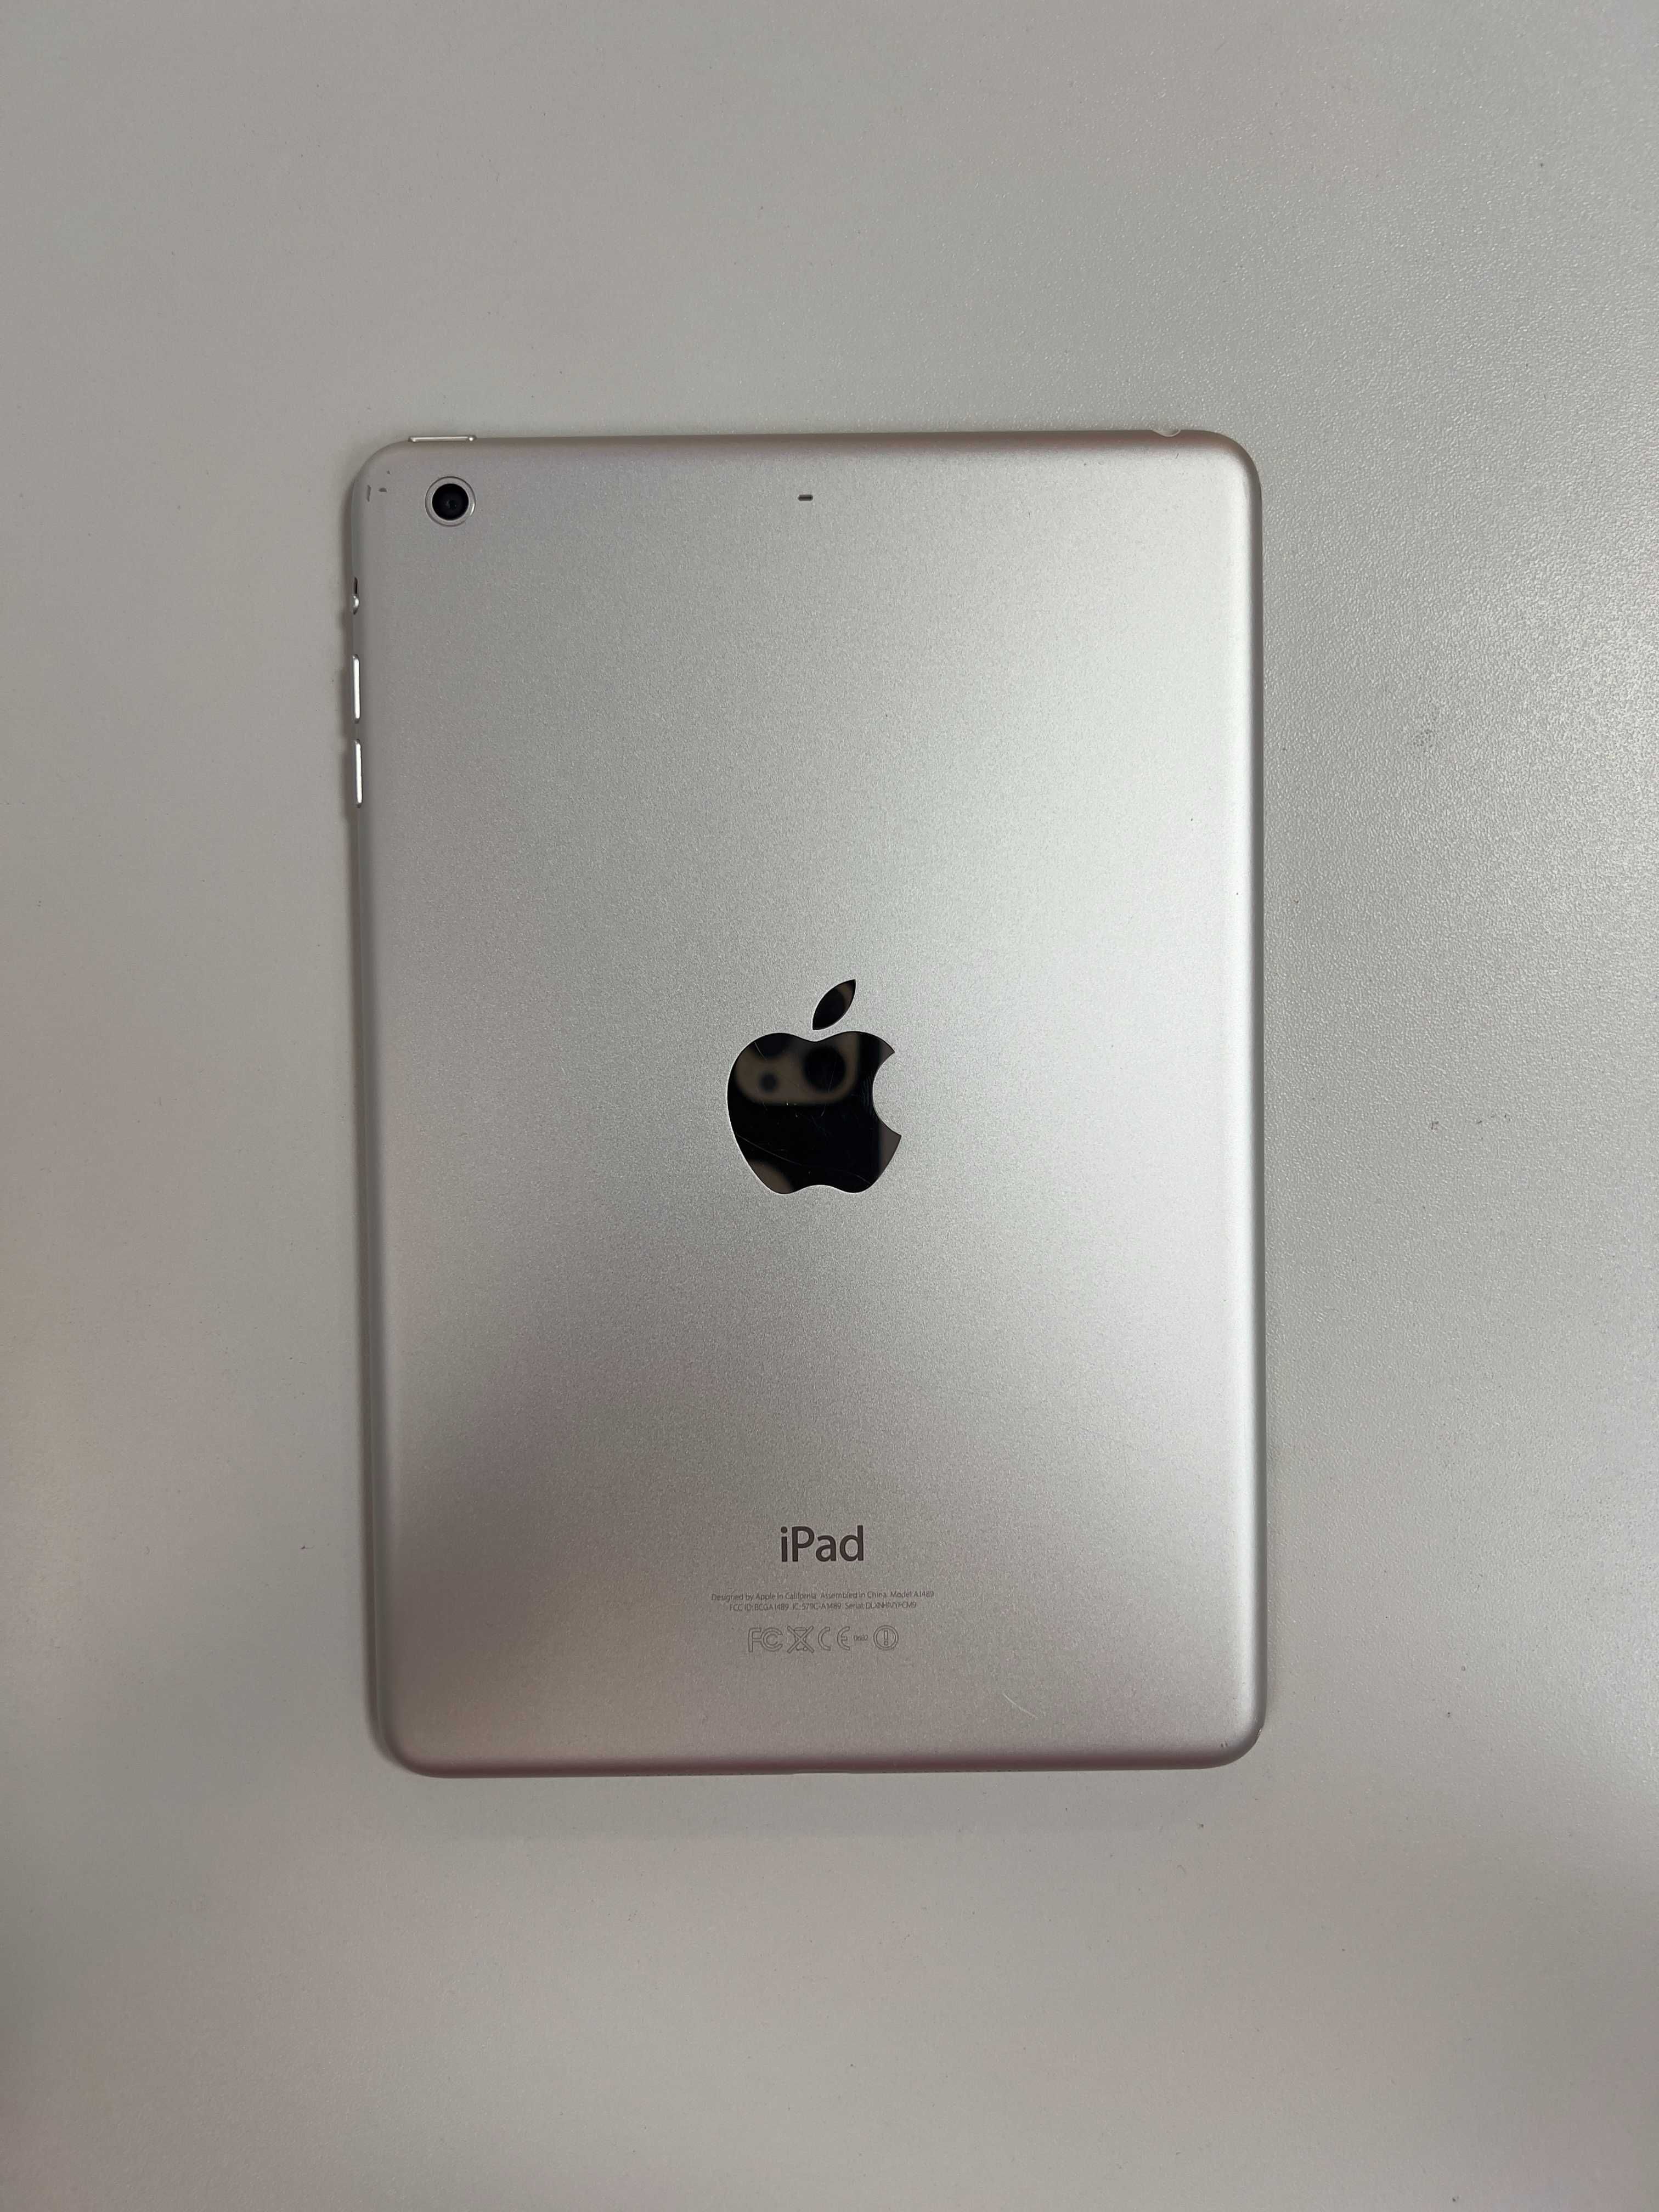 Tablet Apple iPad Mini 16GB A1432.